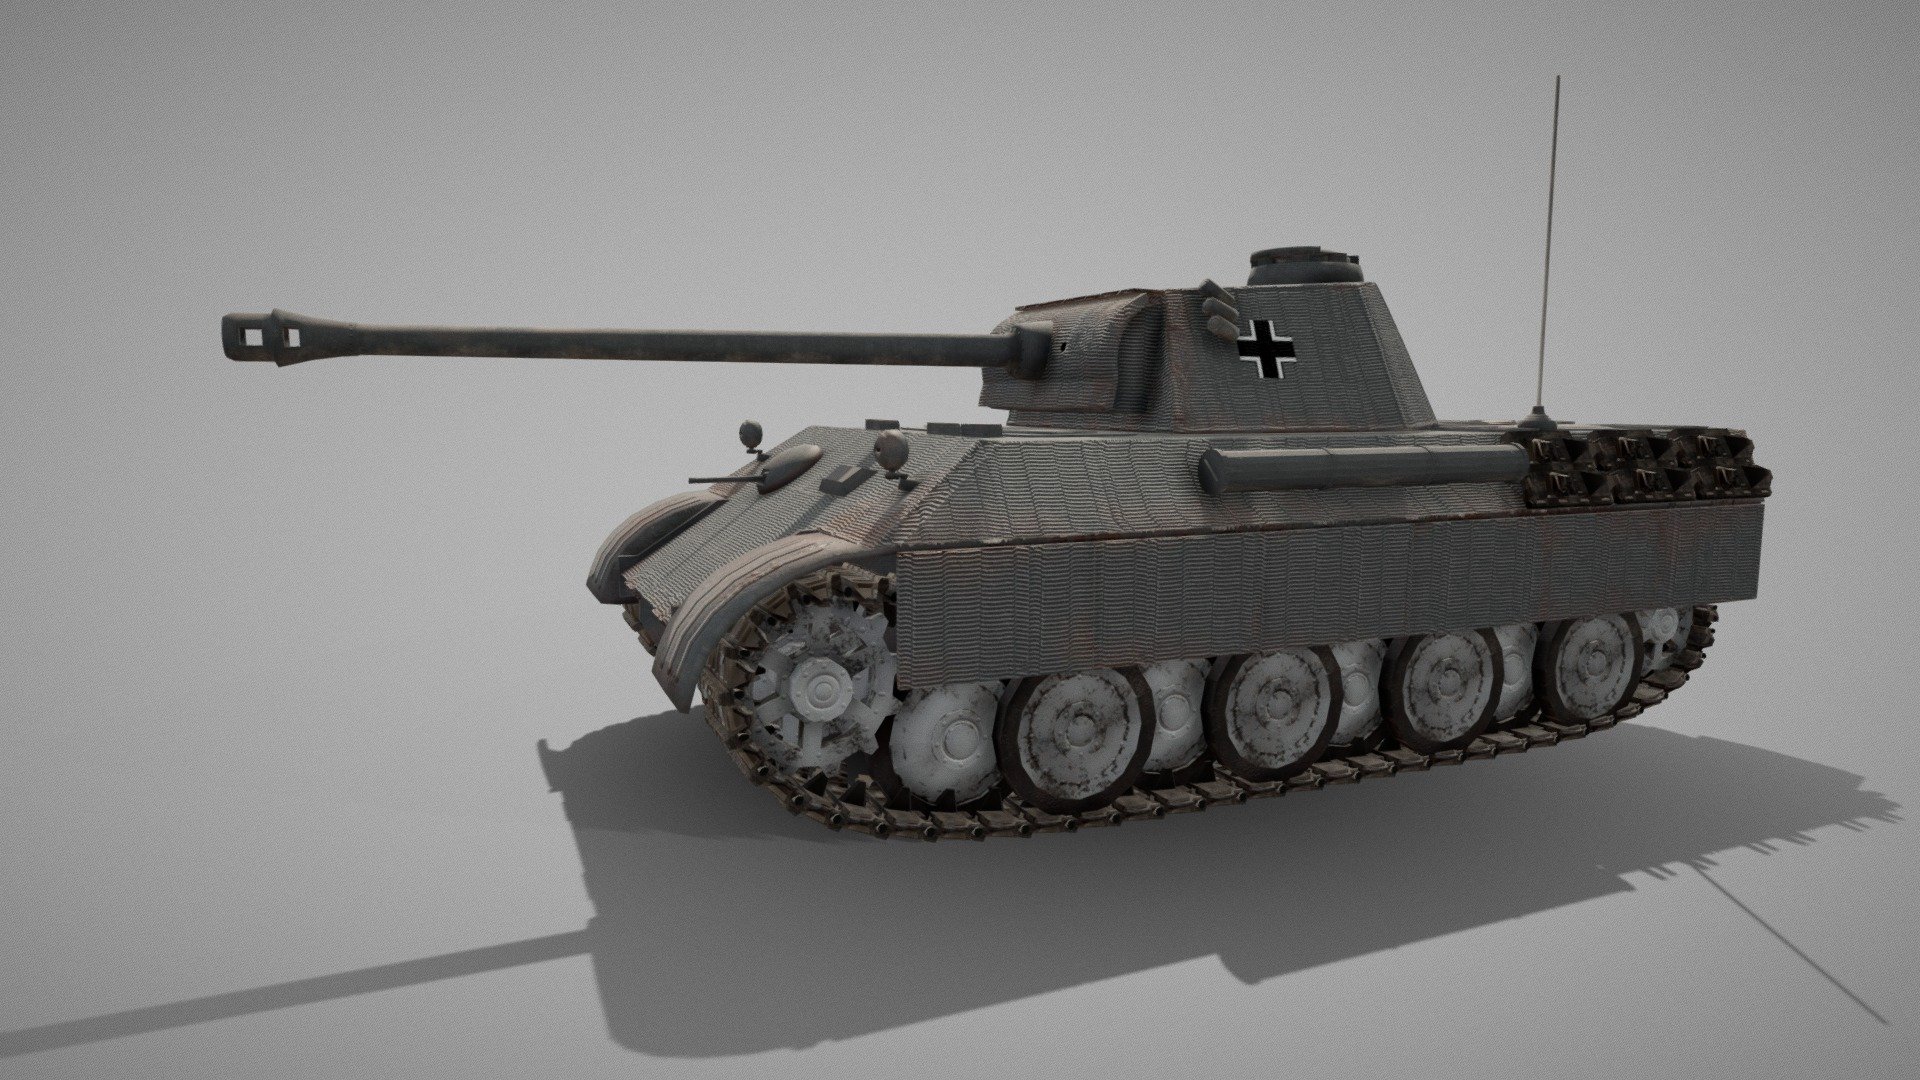 Panzerkampfwagen V Panther Download Free 3d Model By Spillut Spilut [0edb754] Sketchfab